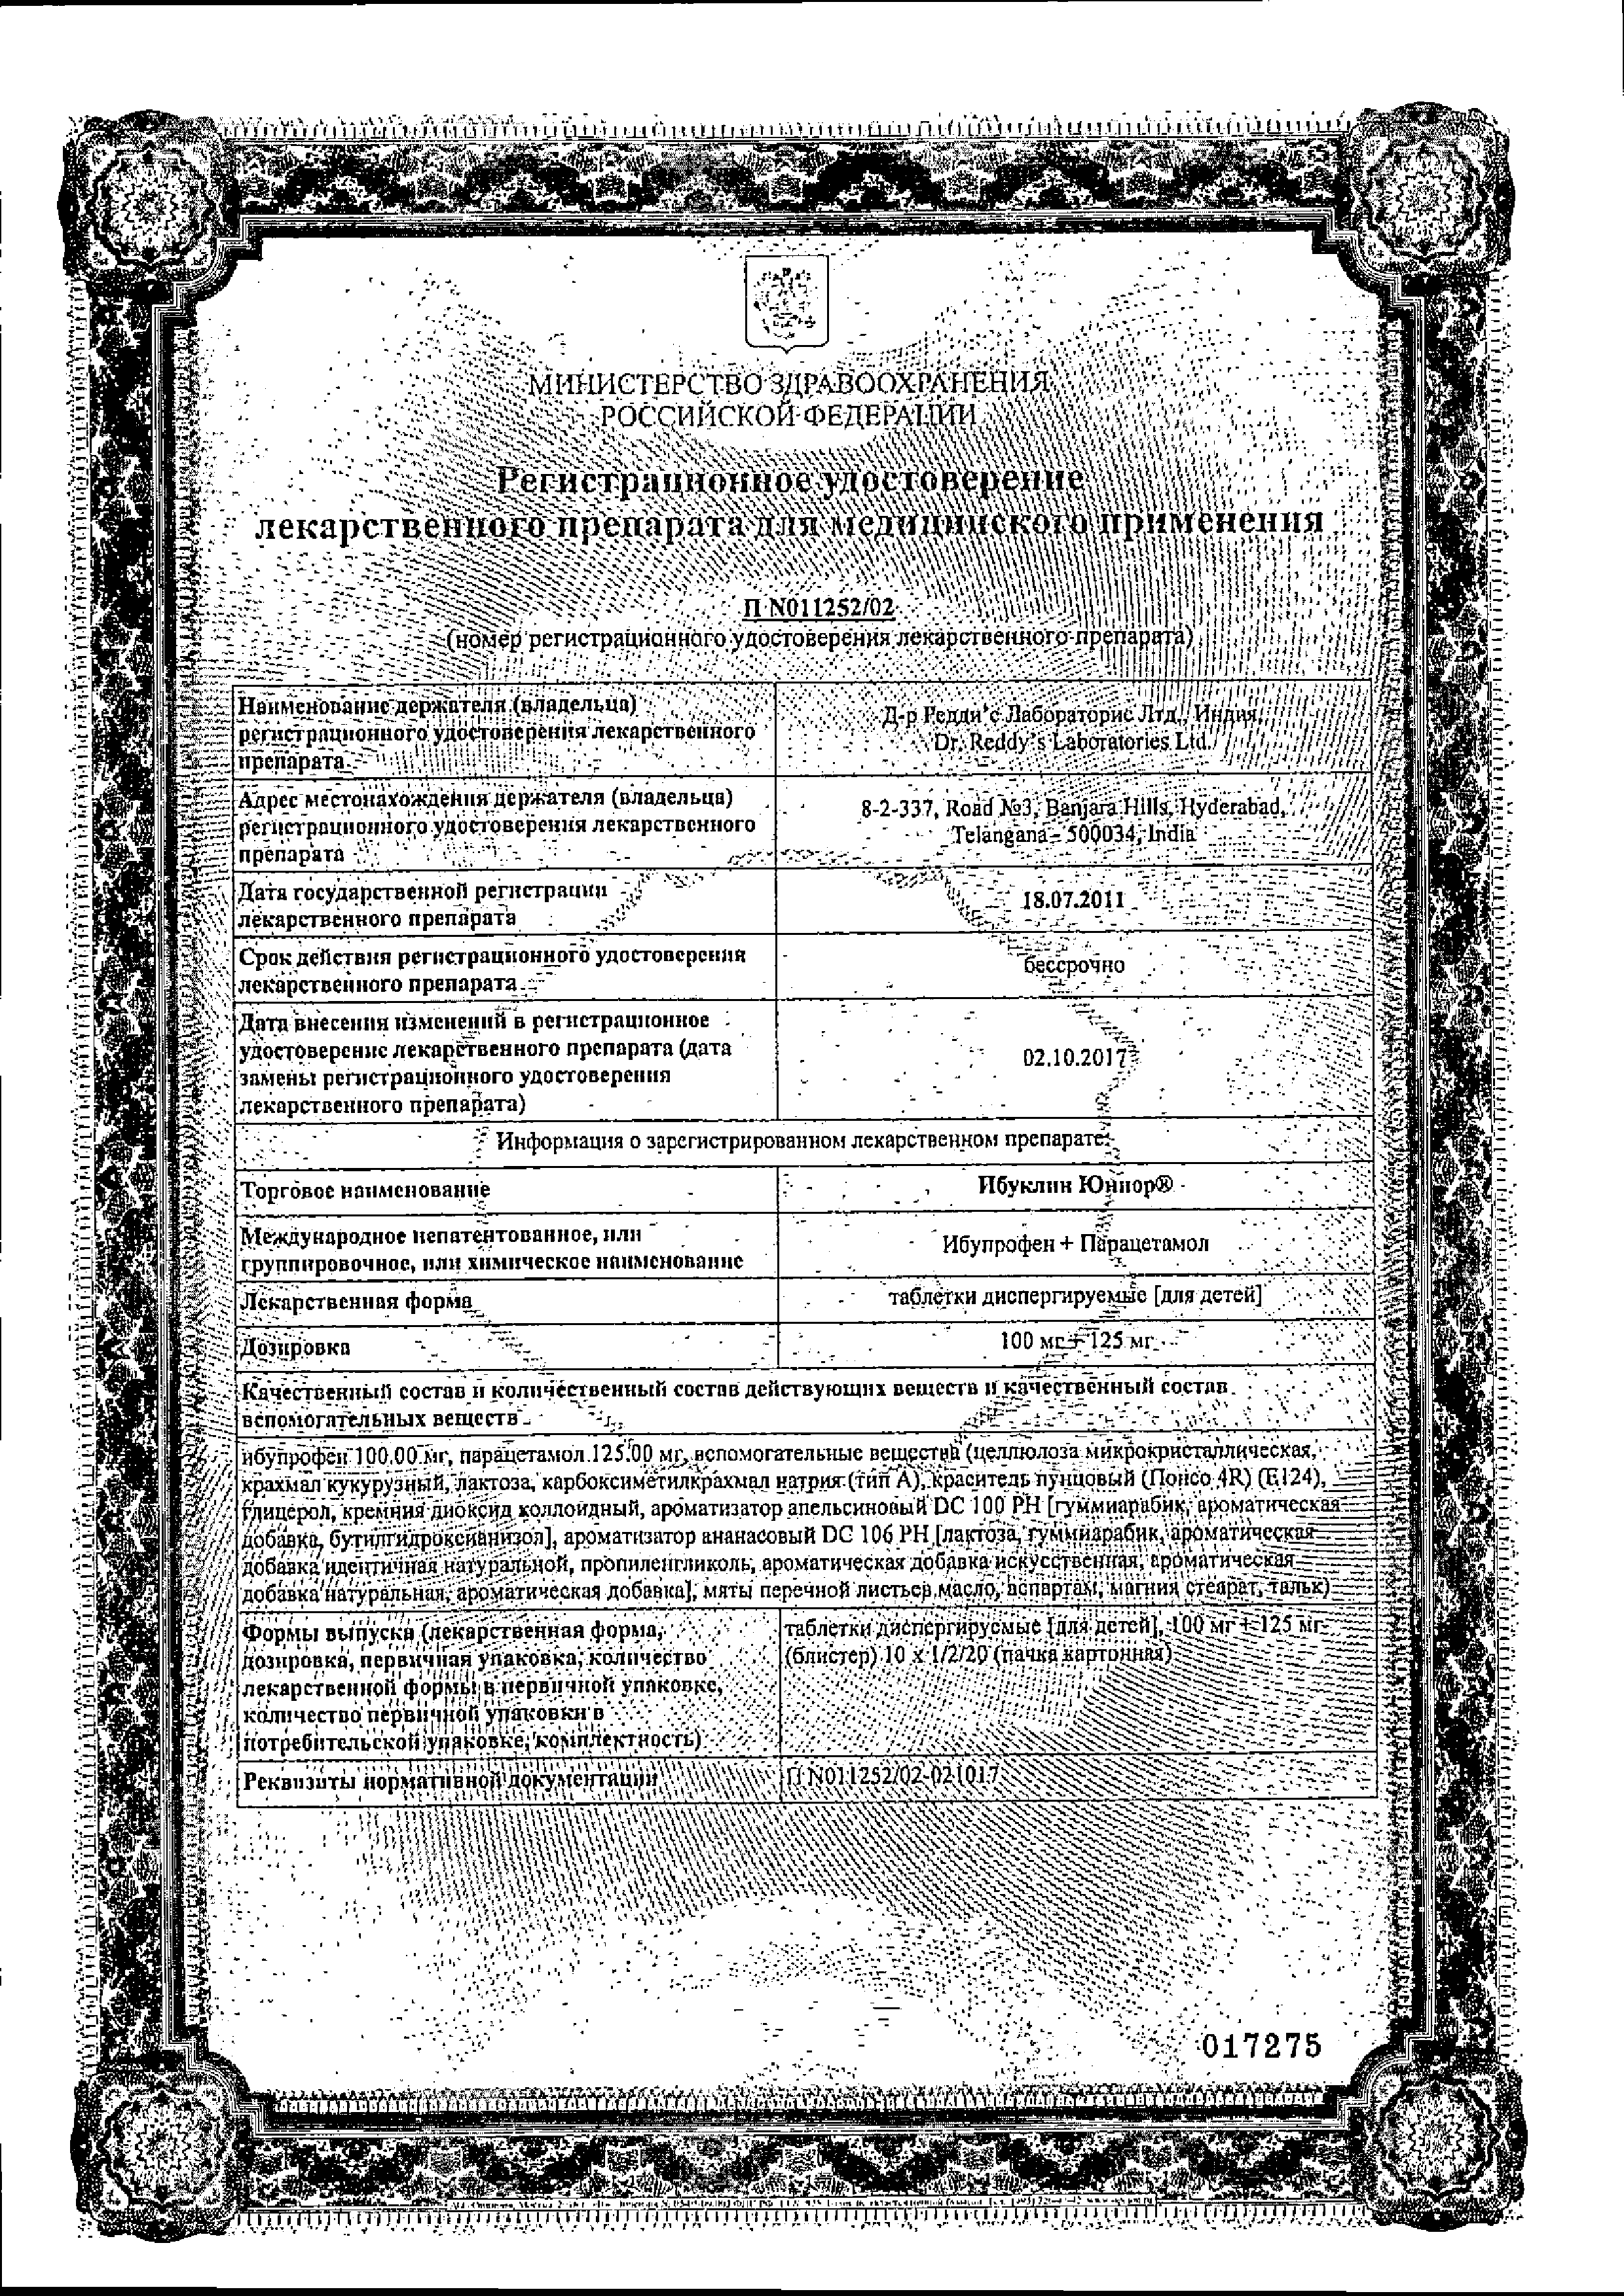 Ибуклин Юниор сертификат